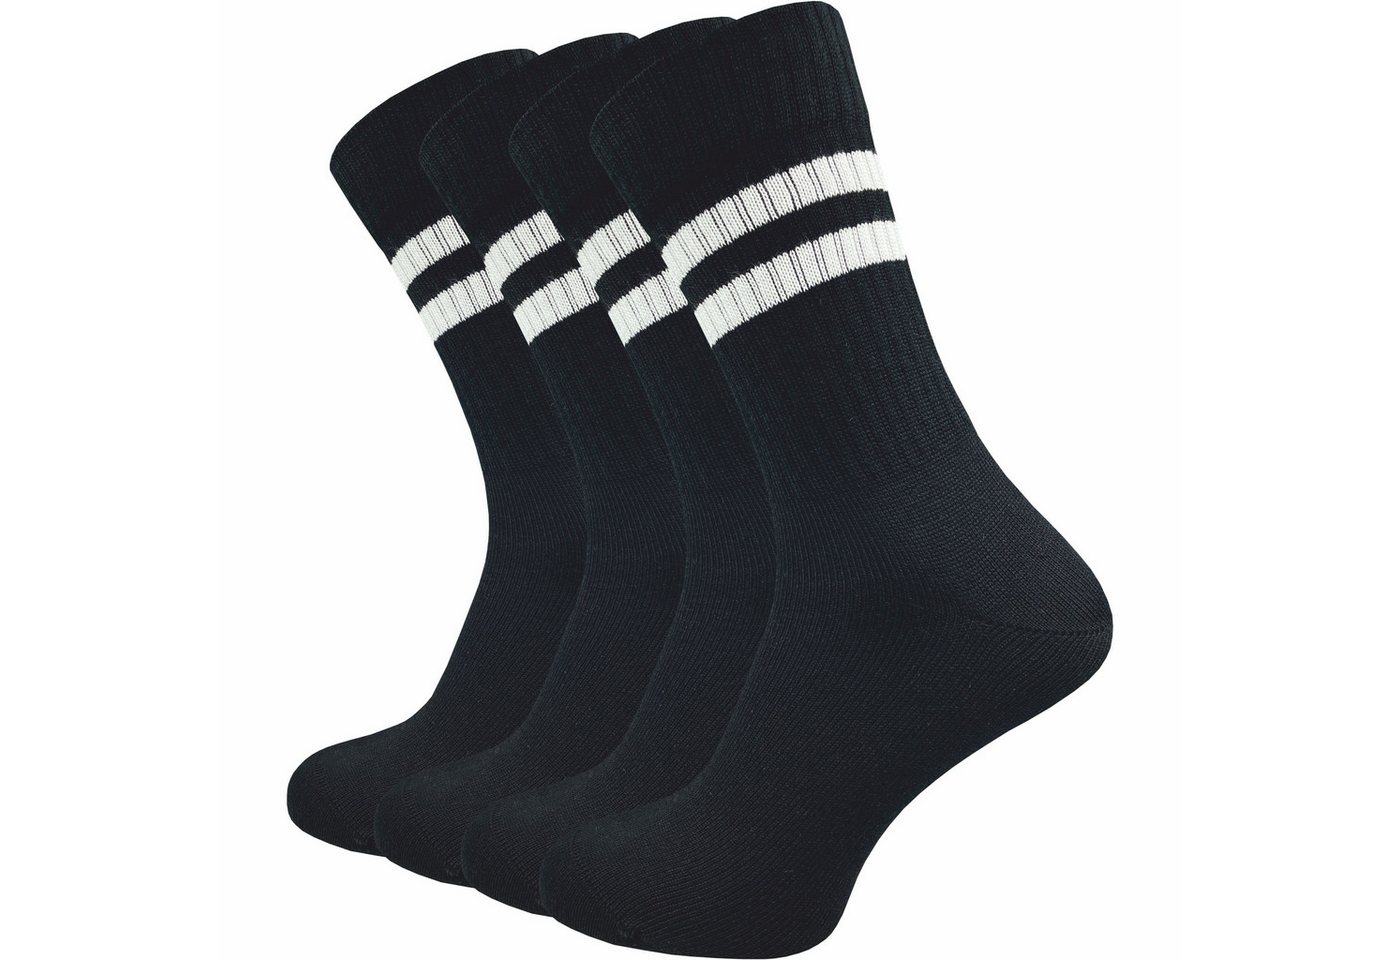 GAWILO Tennissocken für Herren mit Retro Streifen - sehr hochwertig (4 Paar) Retro Socken mit verstärkter Ferse und Spitze - made in Europe von GAWILO